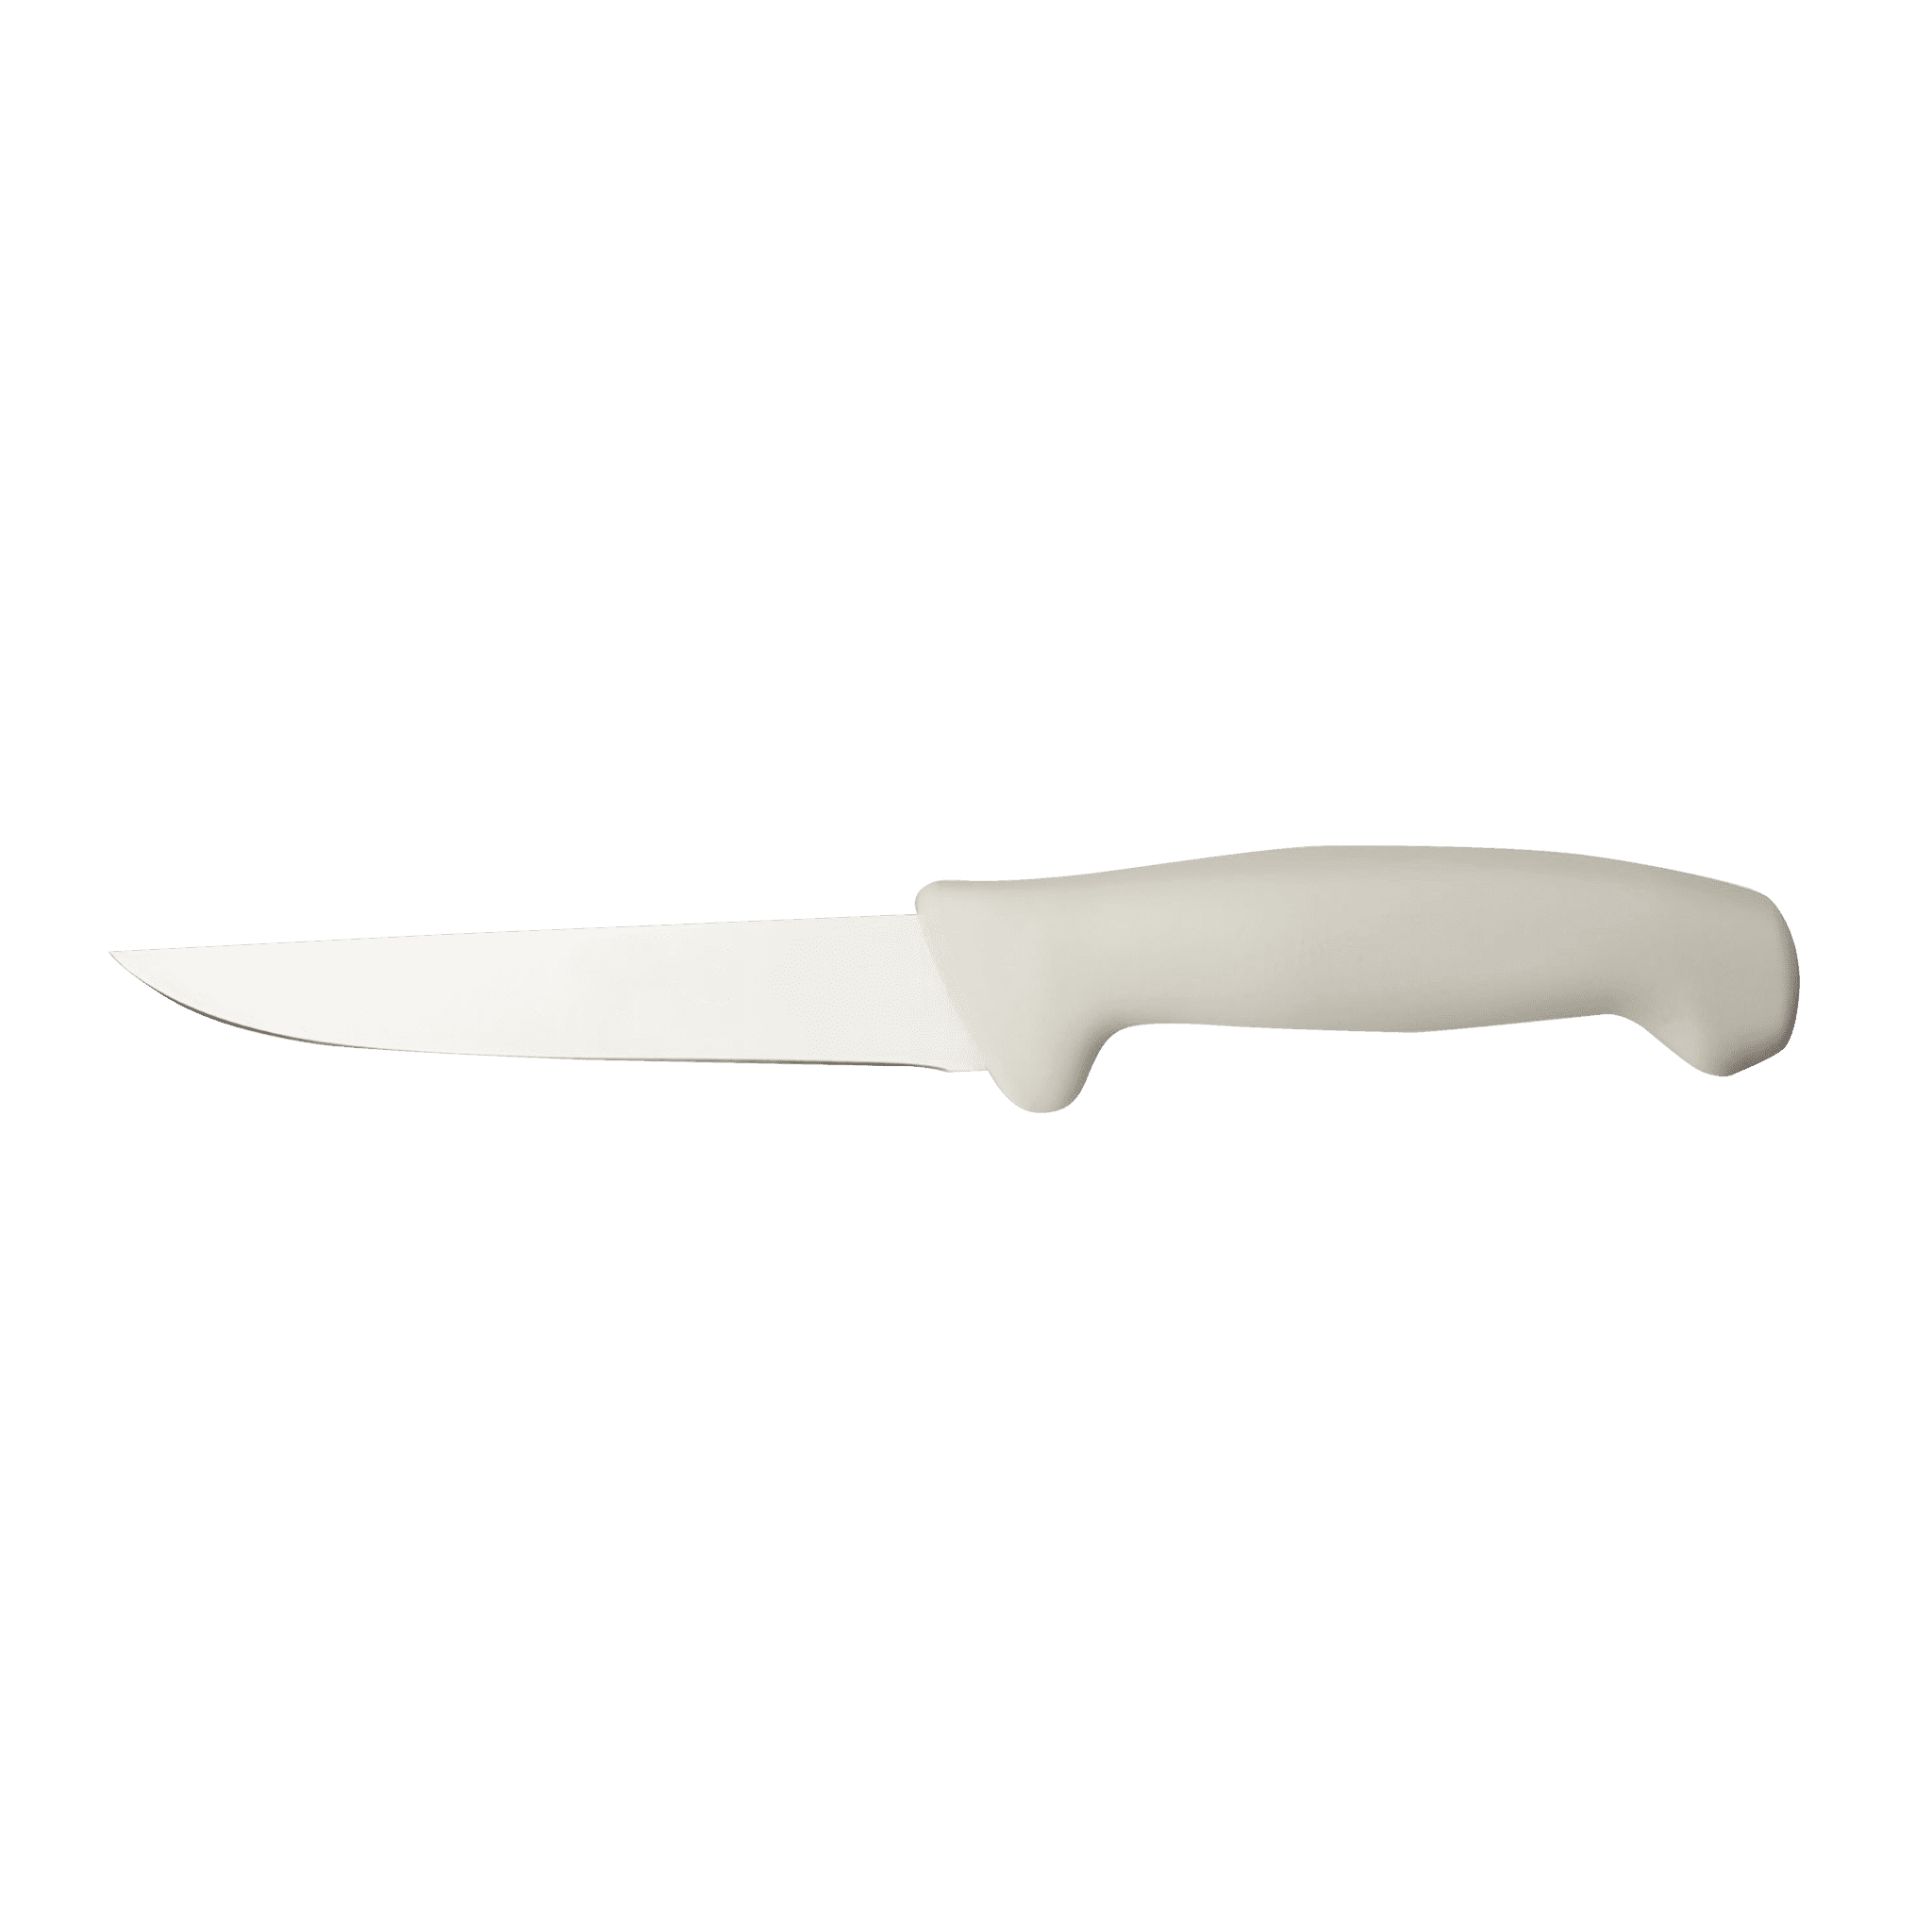 Boning Knife (Curved Flexible) - Matuska Taxidermy Supply Company